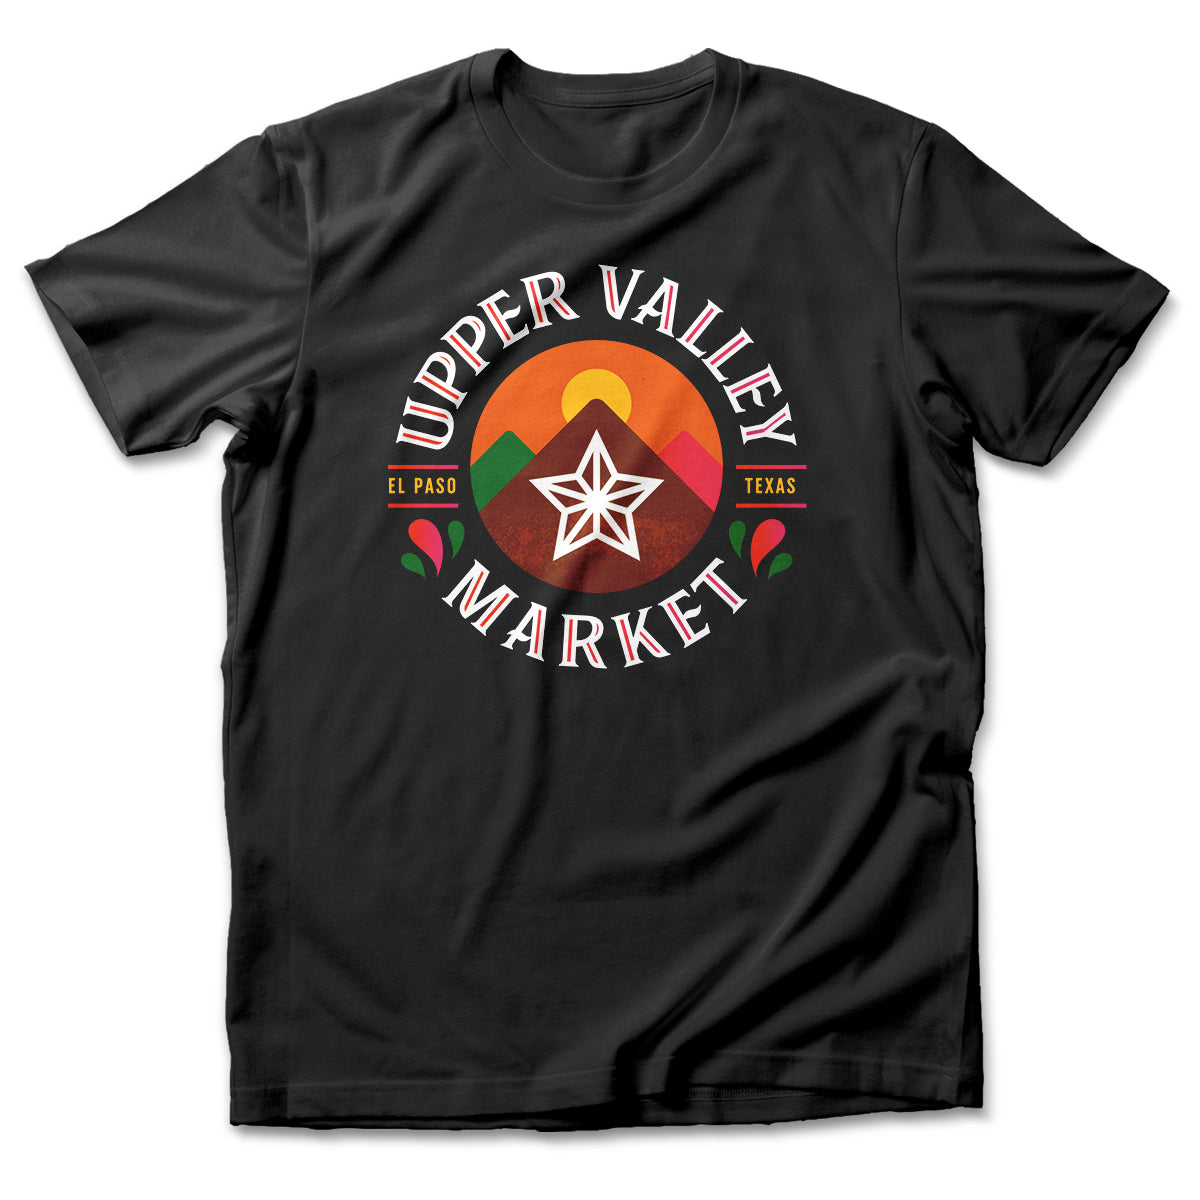 Upper Valley Market Logo T-Shirt